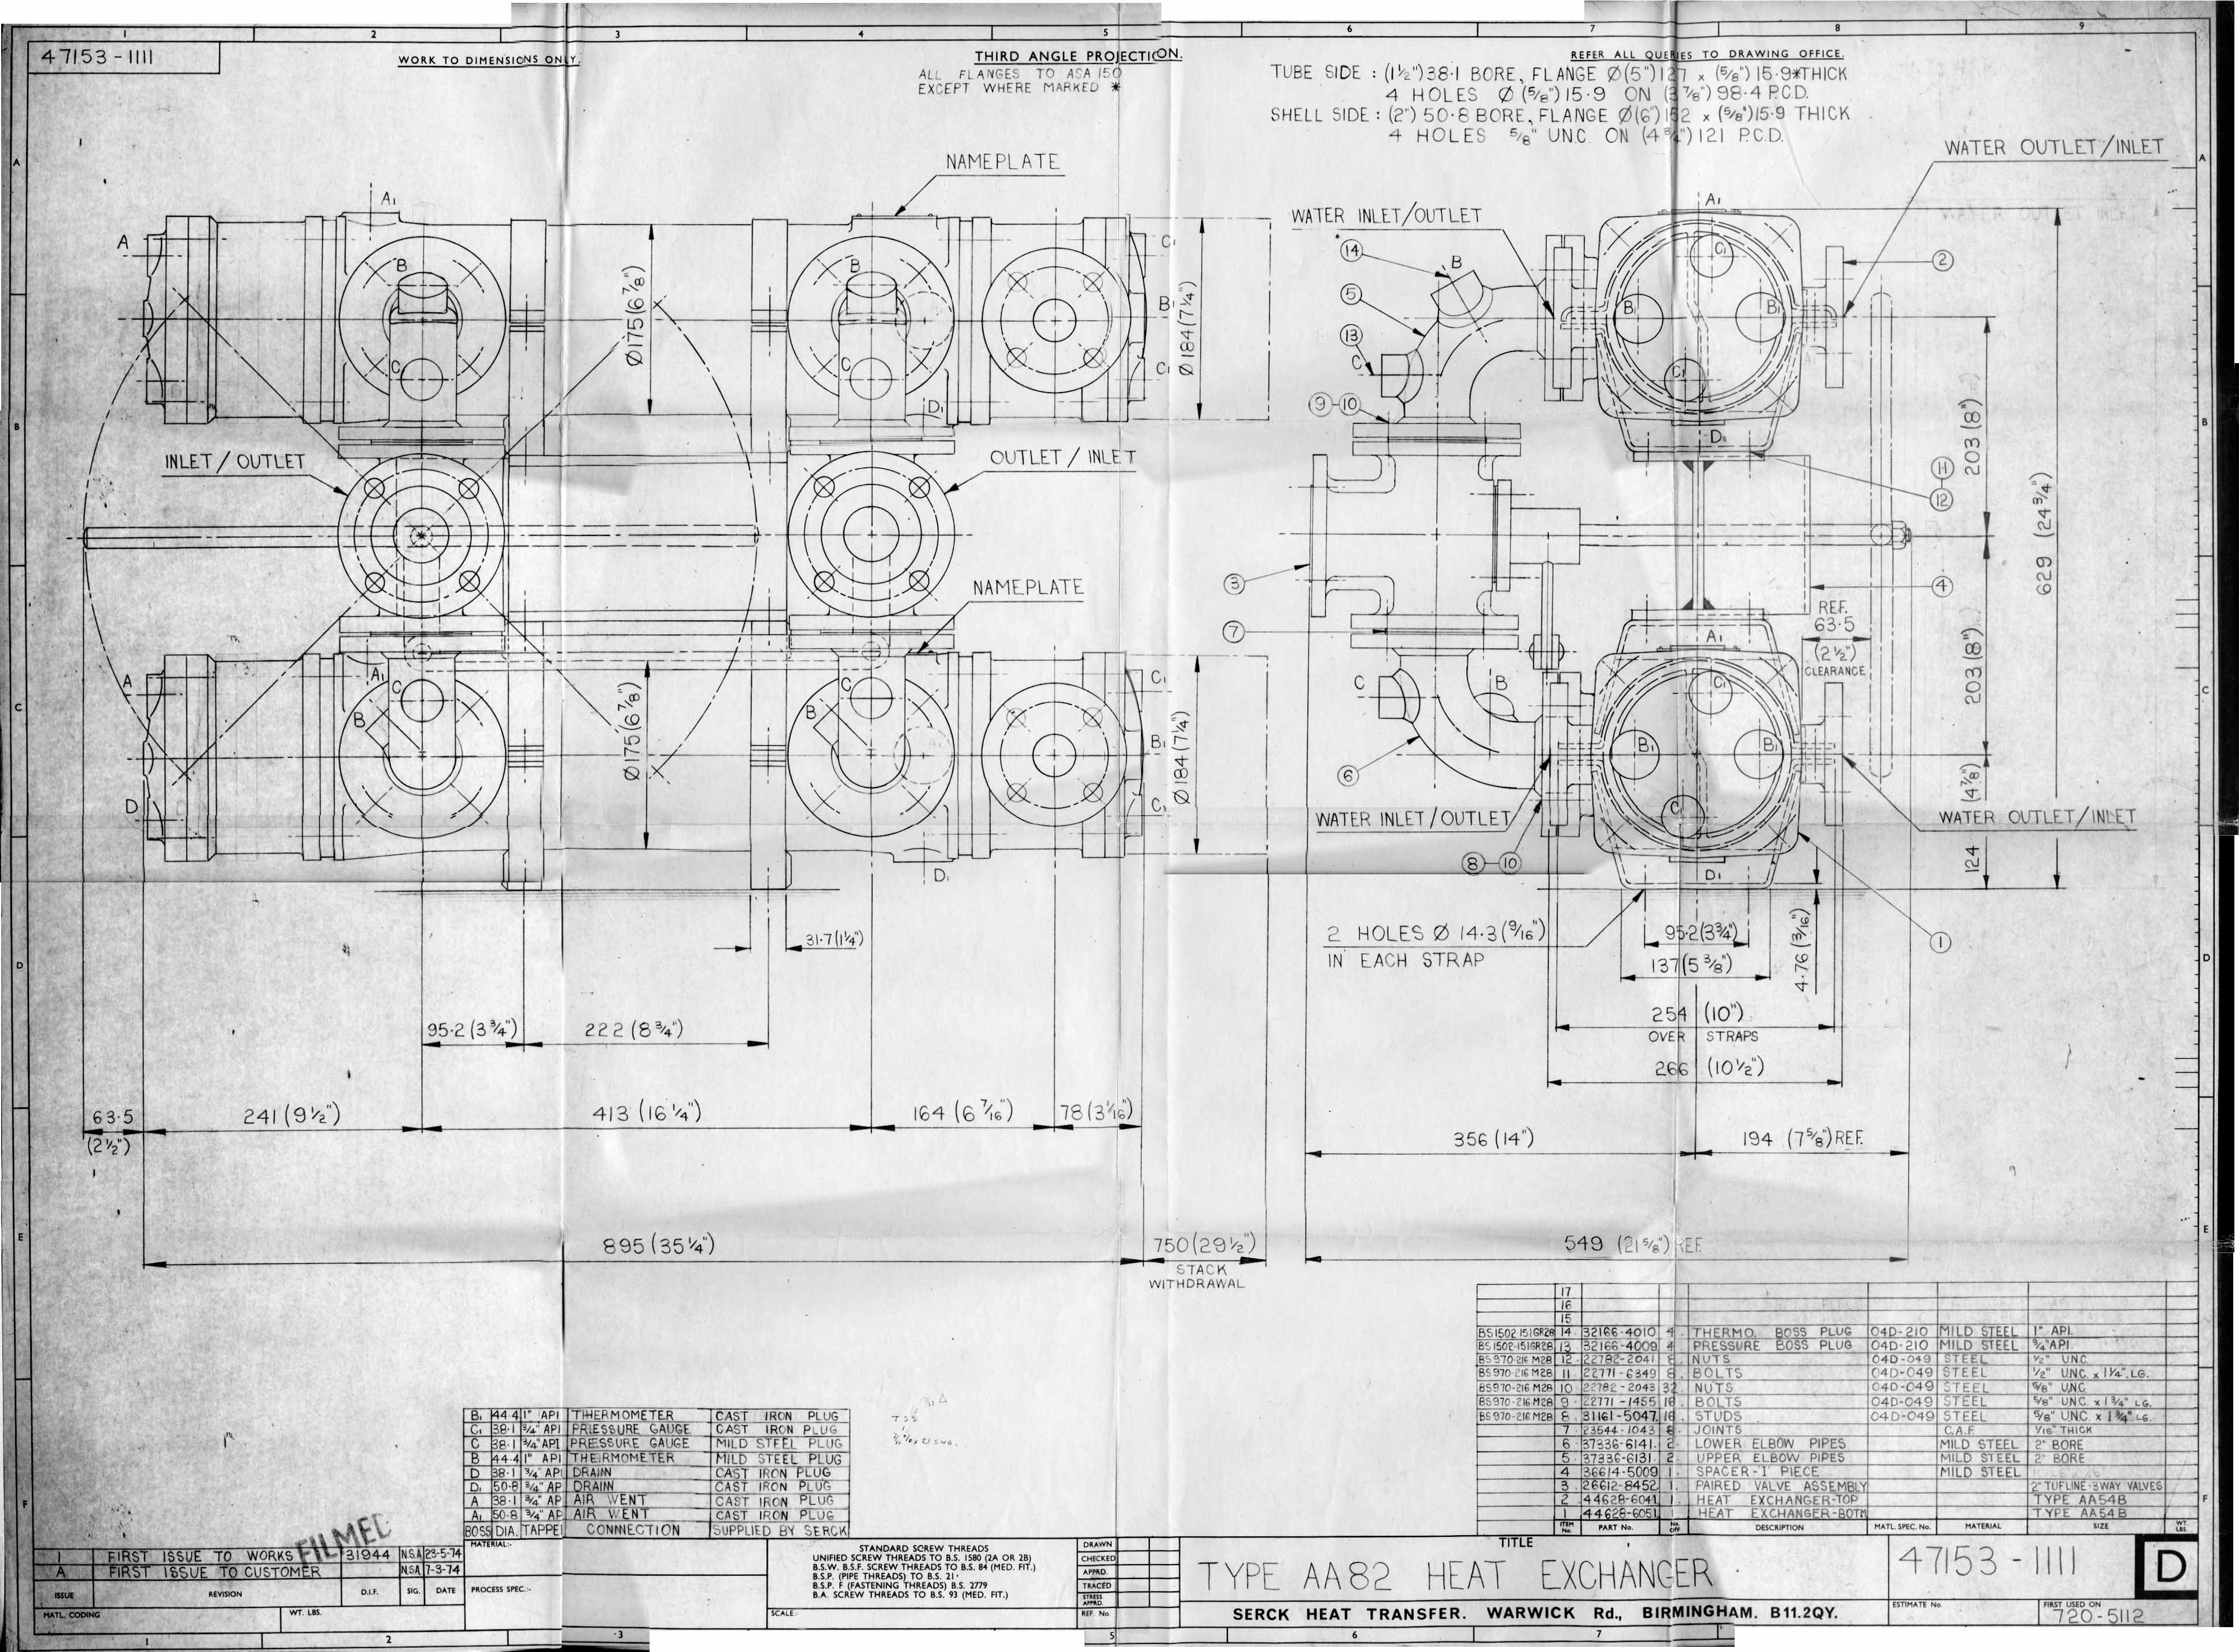 Images Ed 1994 Engineering Drawings/image023.jpg